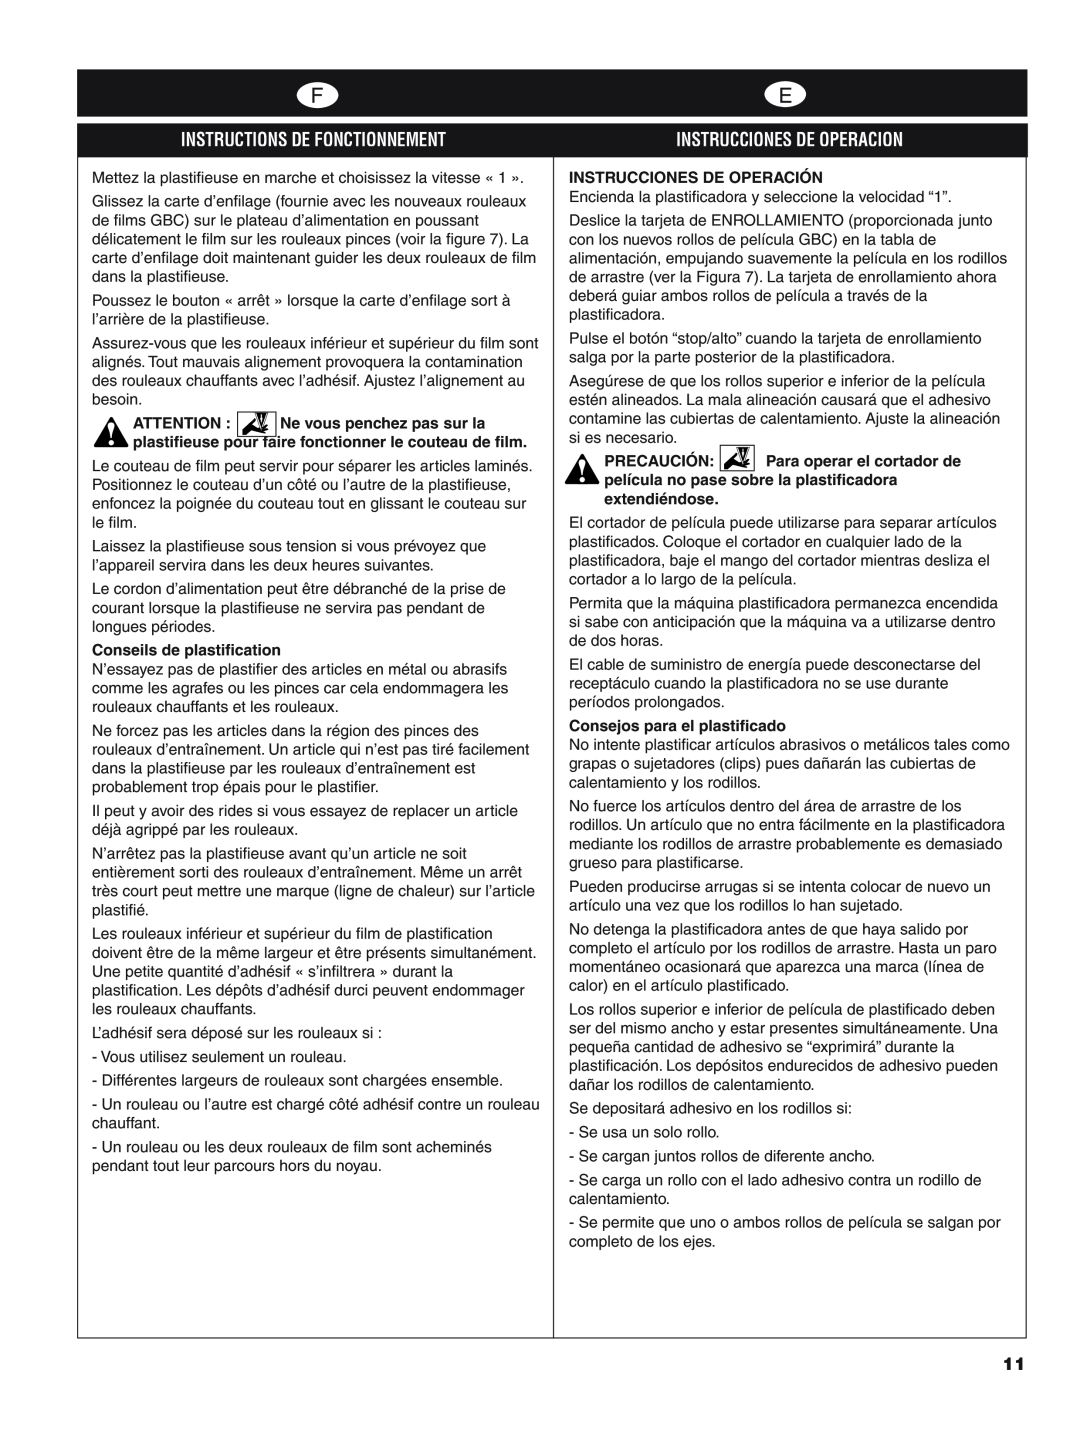 GBC H800 PRO-R manual Instrucciones De Operacion, Instructions De Fonctionnement, Instrucciones De Operación, Precaución 